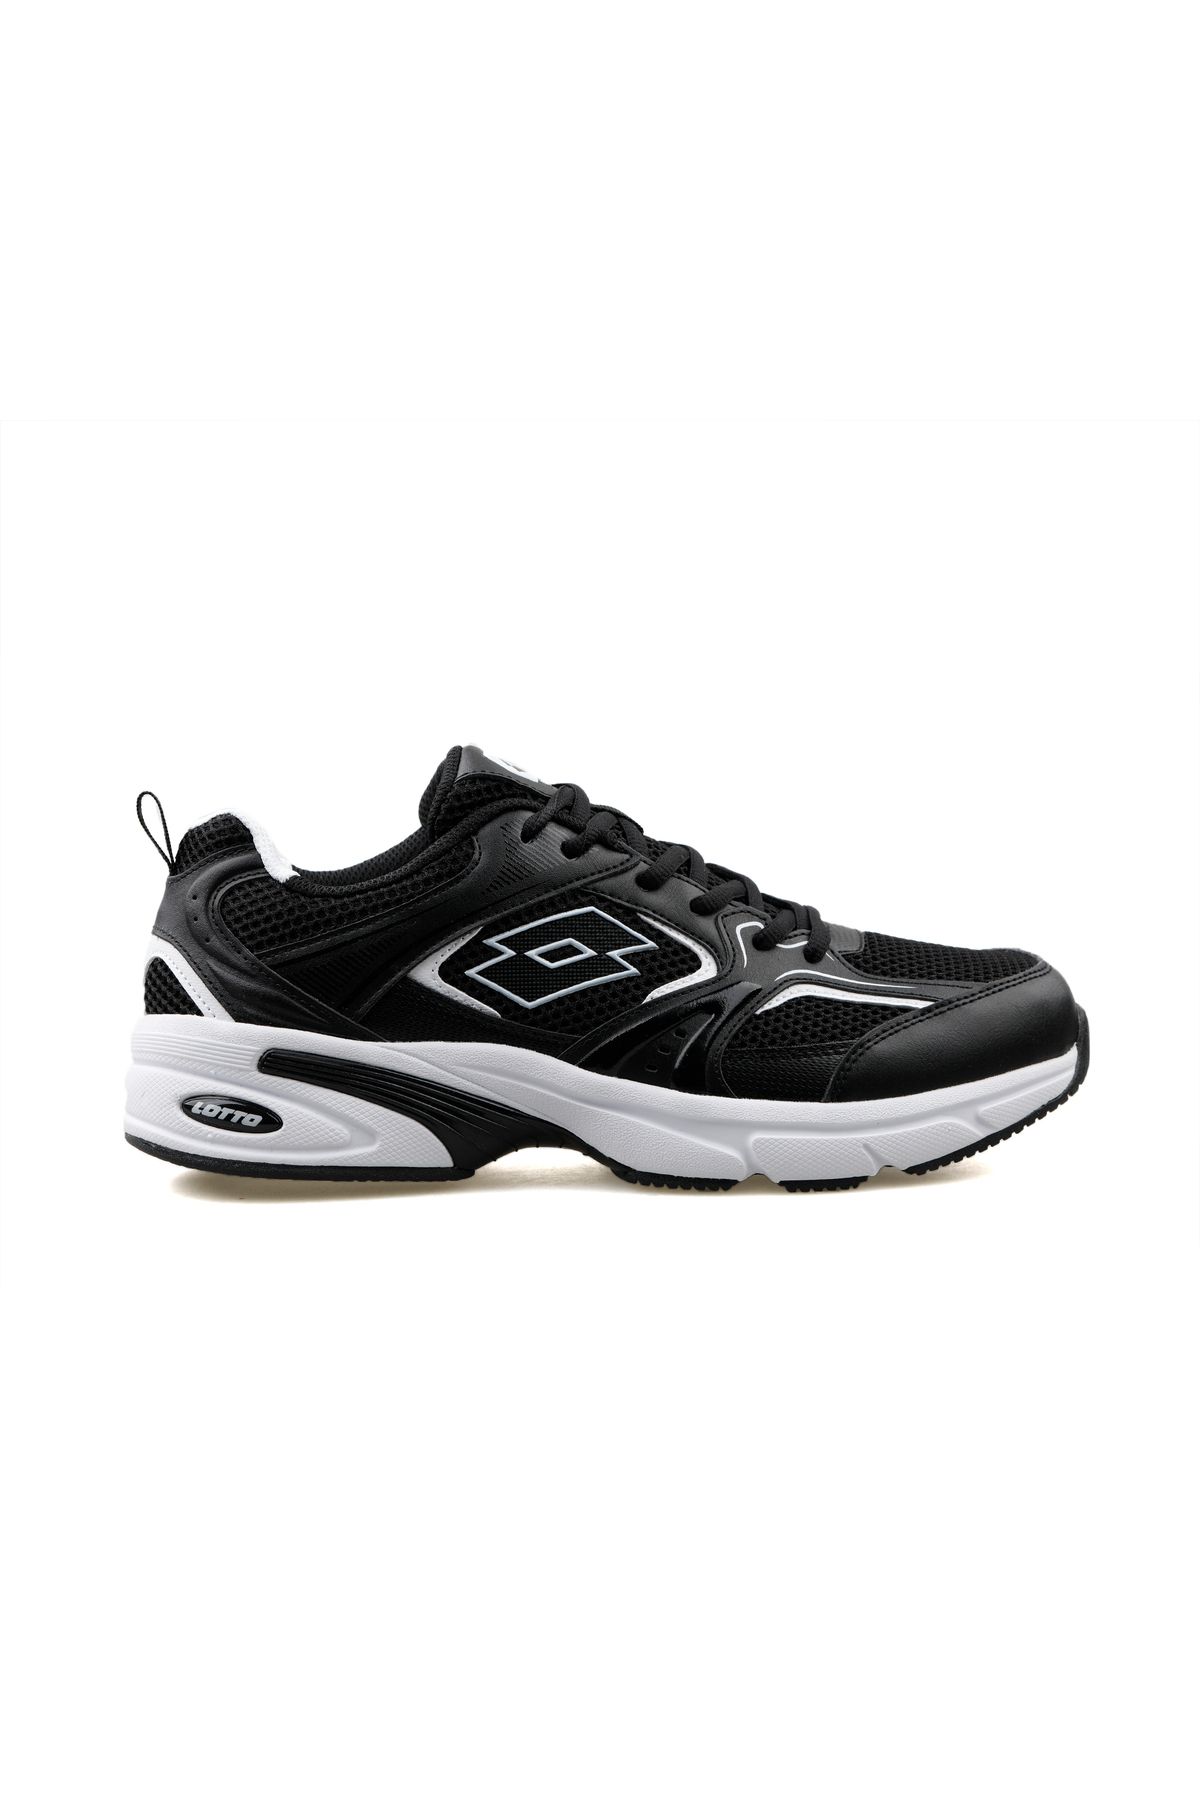 Lotto Athens 4Fx Günlük Spor Ayakkabı Sneaker Siyah